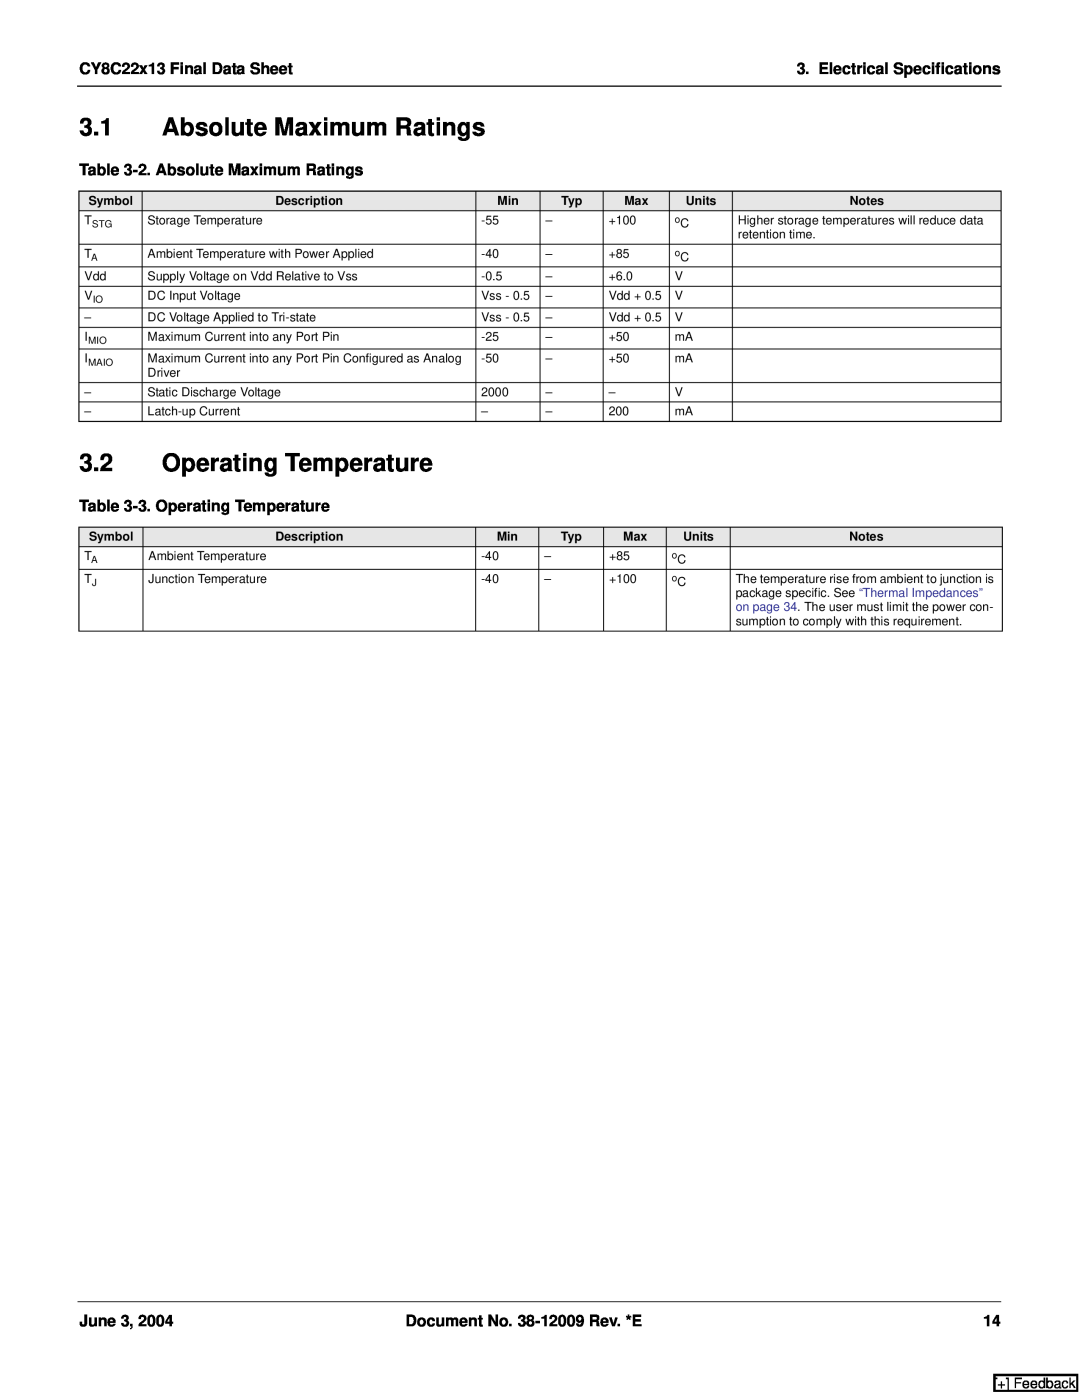 Cypress CY8C22113 manual 2. Absolute Maximum Ratings, 3. Operating Temperature, CY8C22x13 Final Data Sheet, June 3 